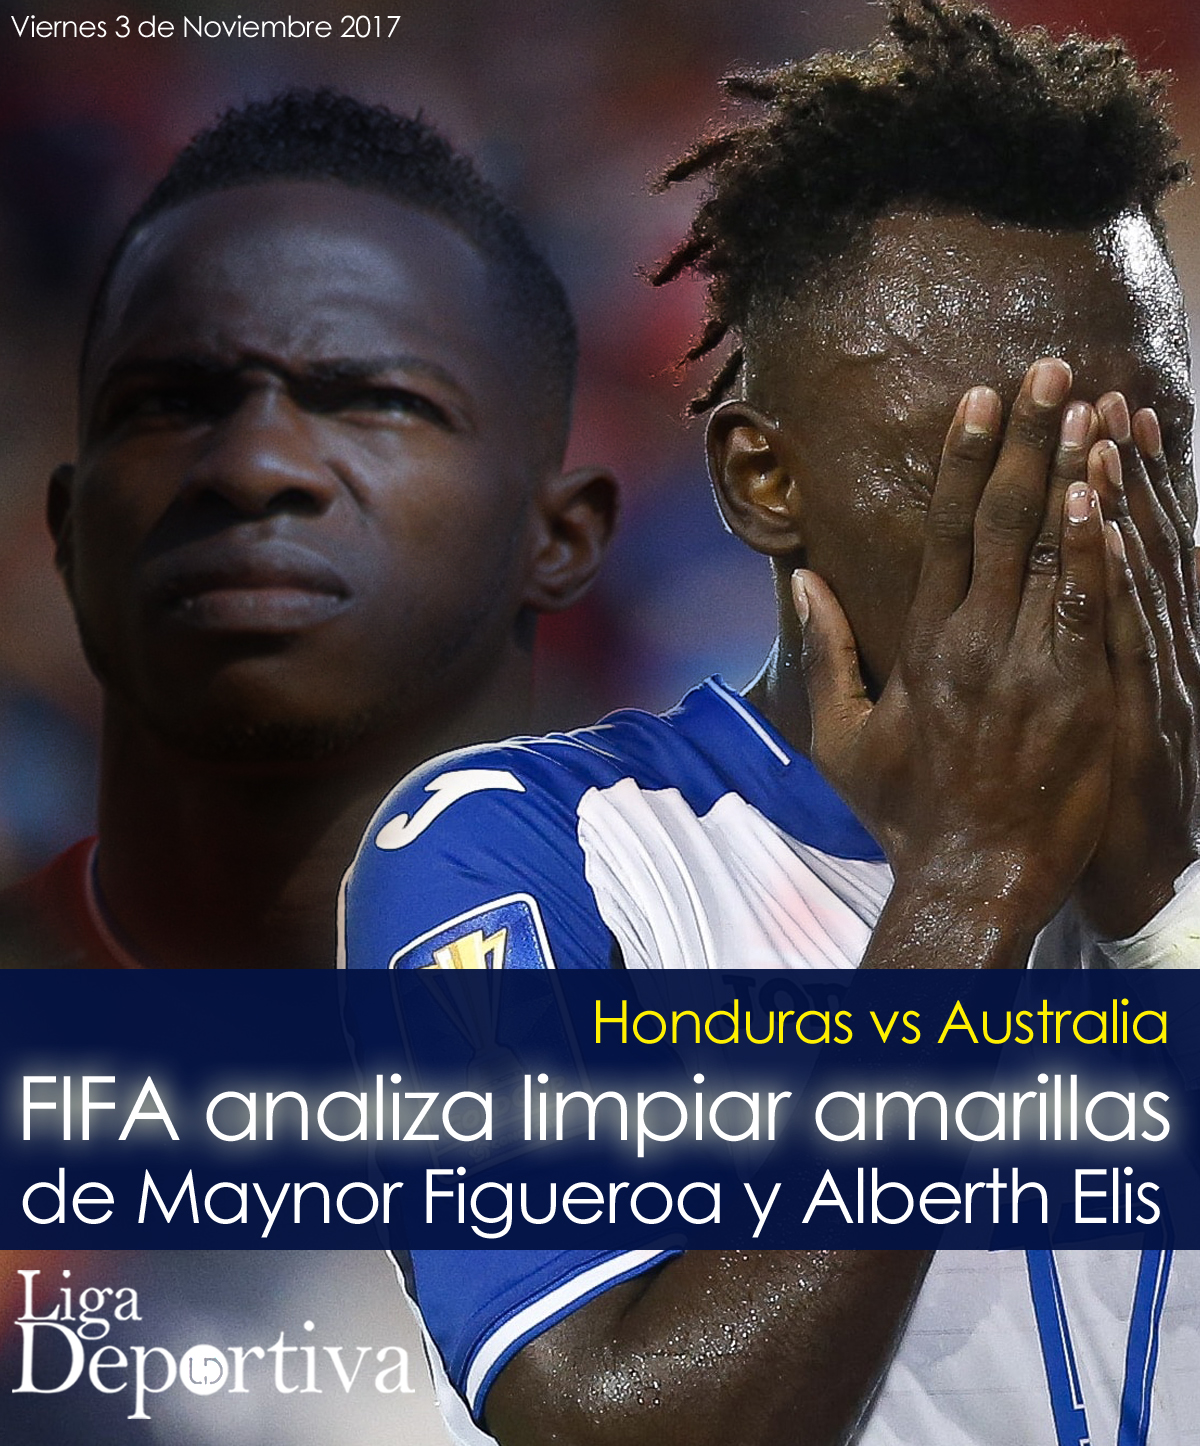 FIFA analiza limpiar amarillas de Maynor Figueroa y Alberth Elis tras petición de Honduras 